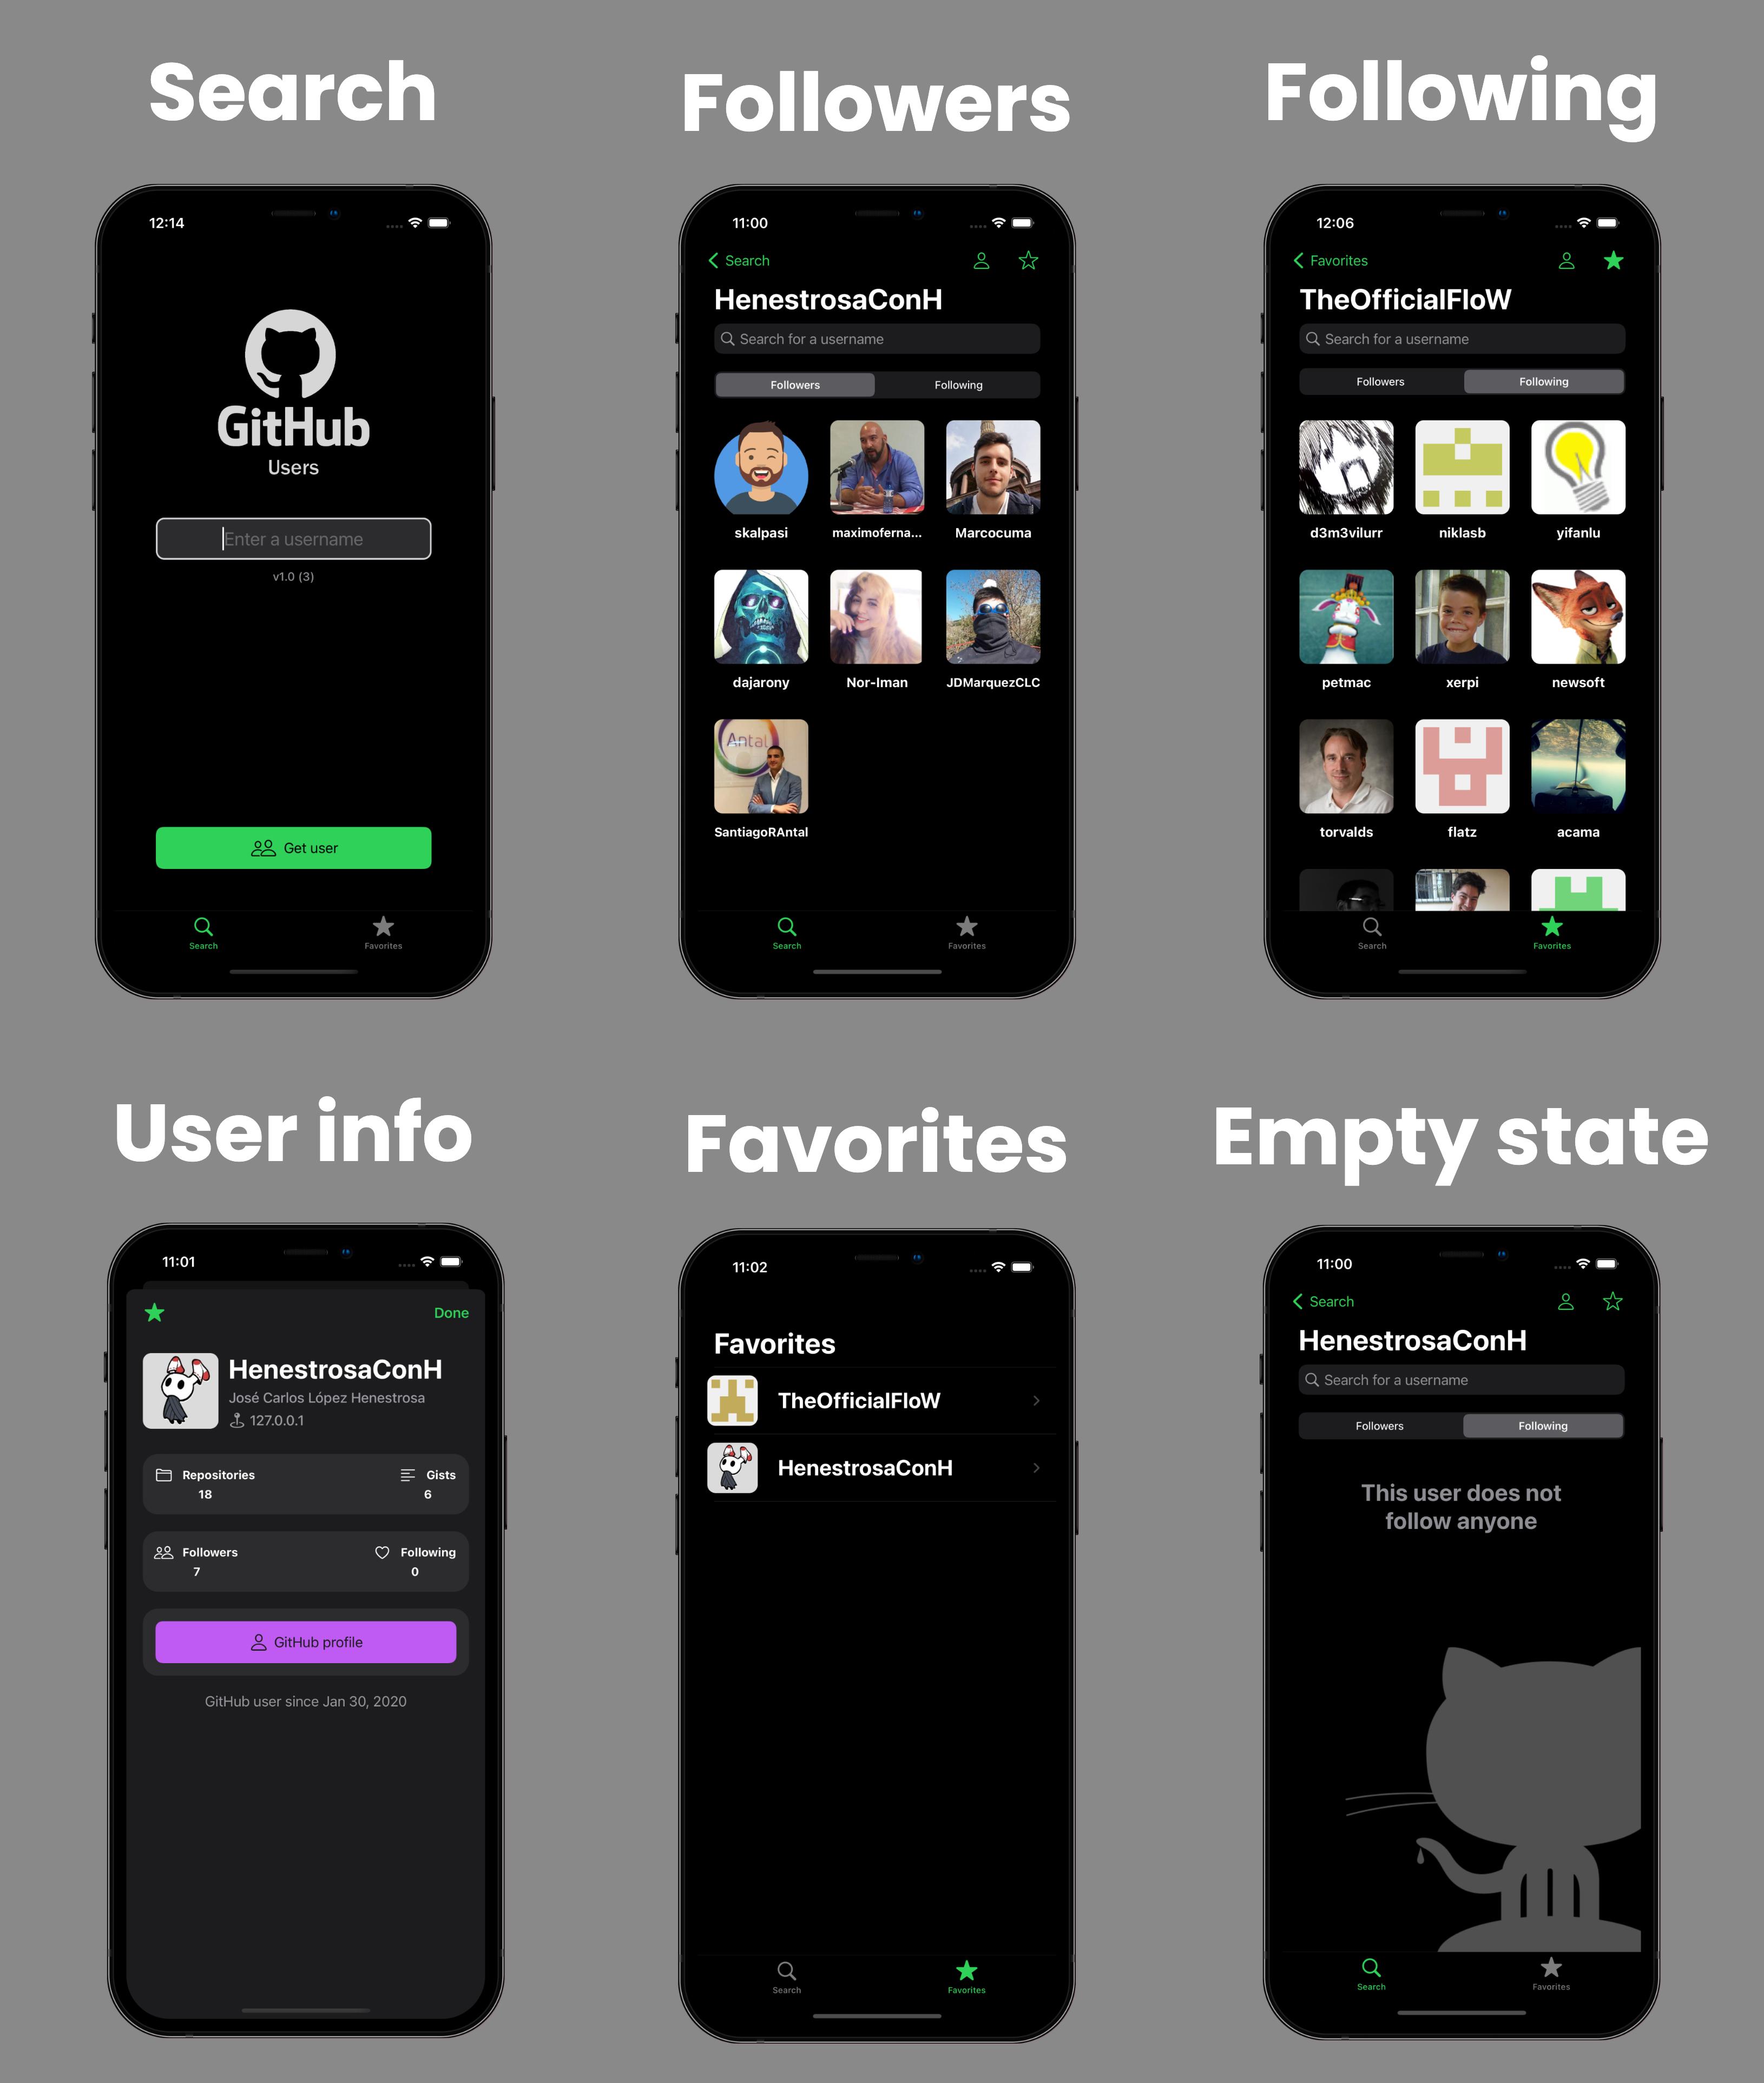 Main dark screens of the app